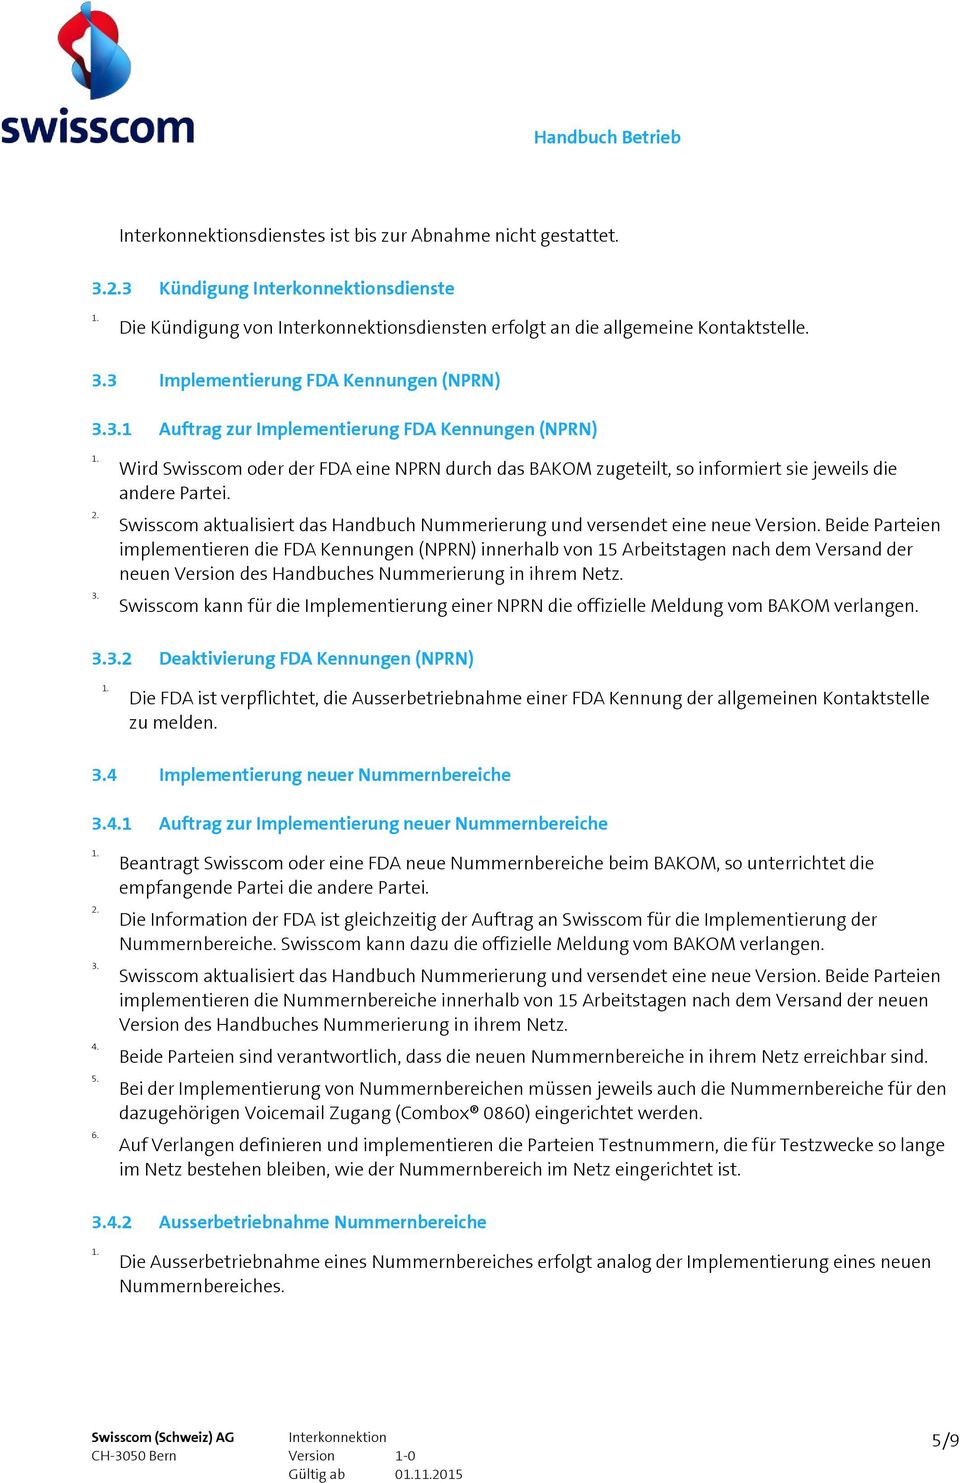 Swisscom aktualisiert das Handbuch Nummerierung und versendet eine neue Version.